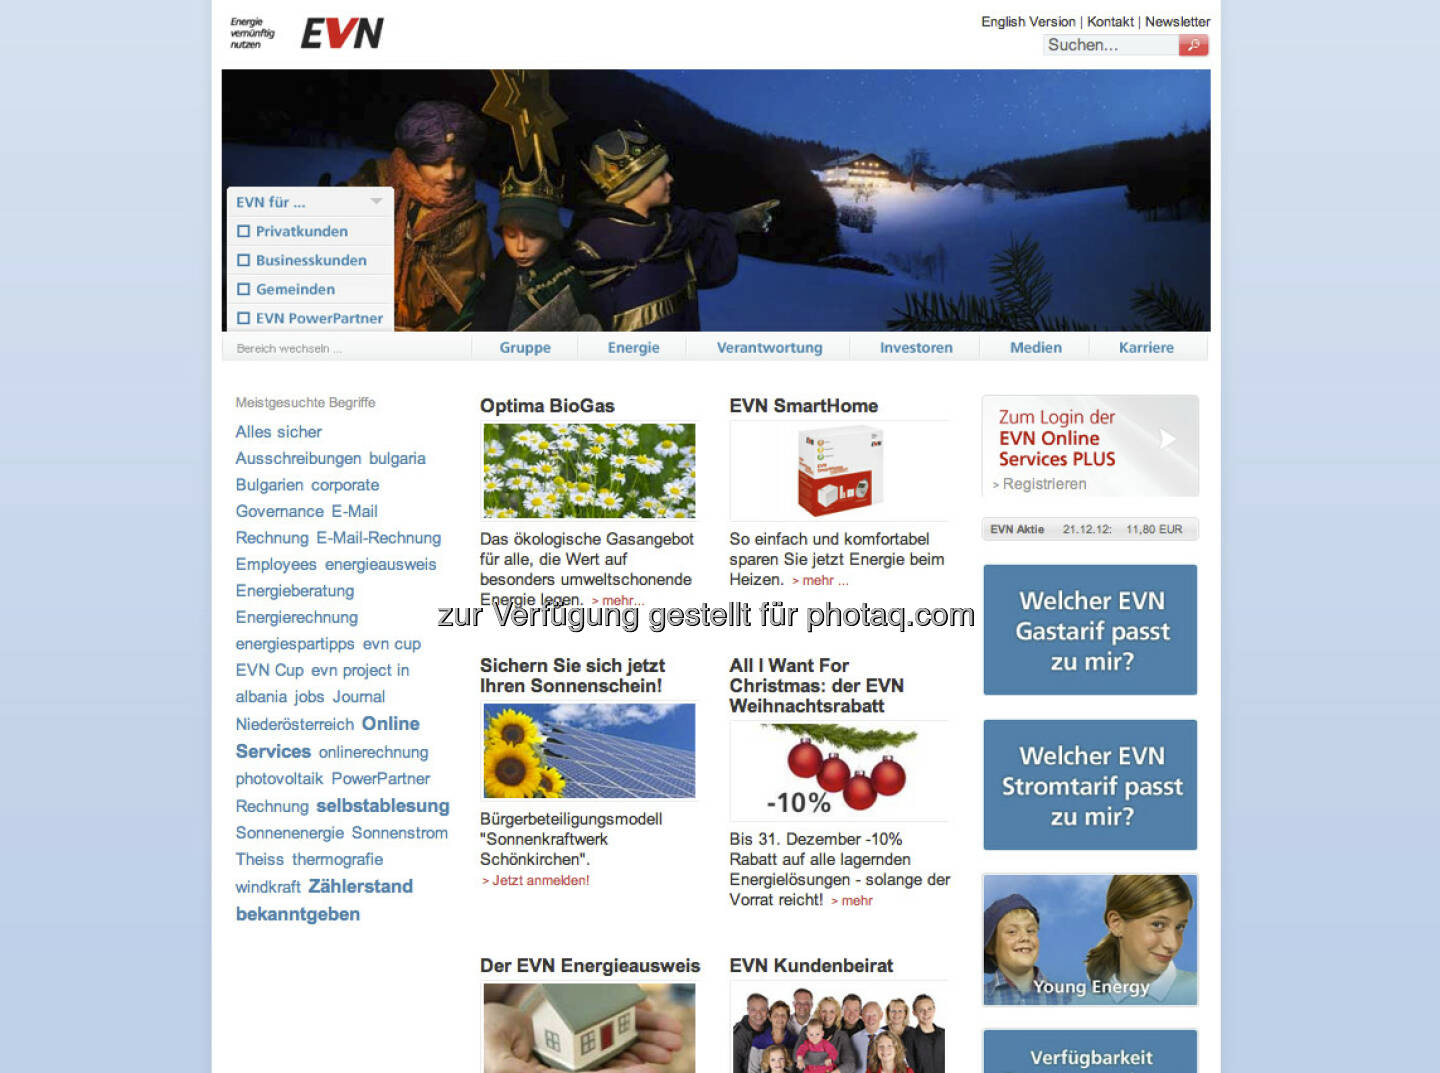 EVN Homepage http://www.evn.at